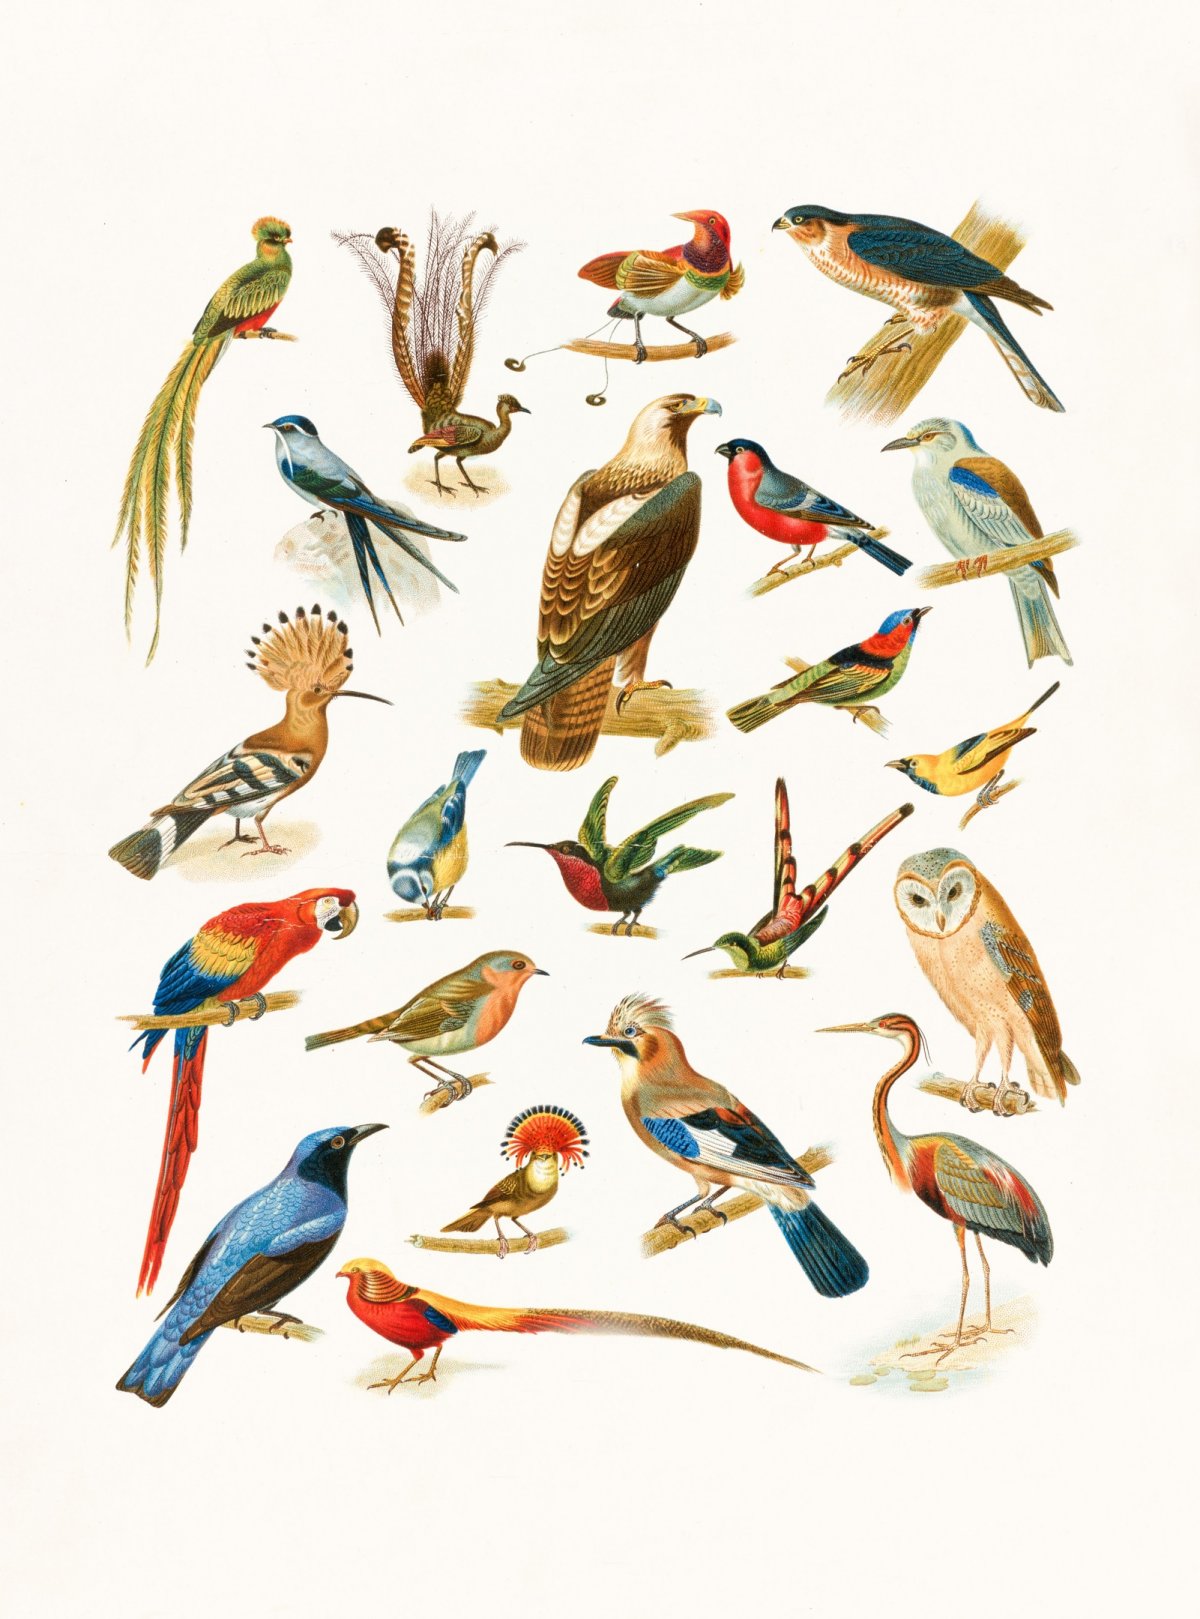 Географы МГУ исследовали более 150 видов птиц в горах Северной Азии. Им удалось провести инвентаризацию птиц